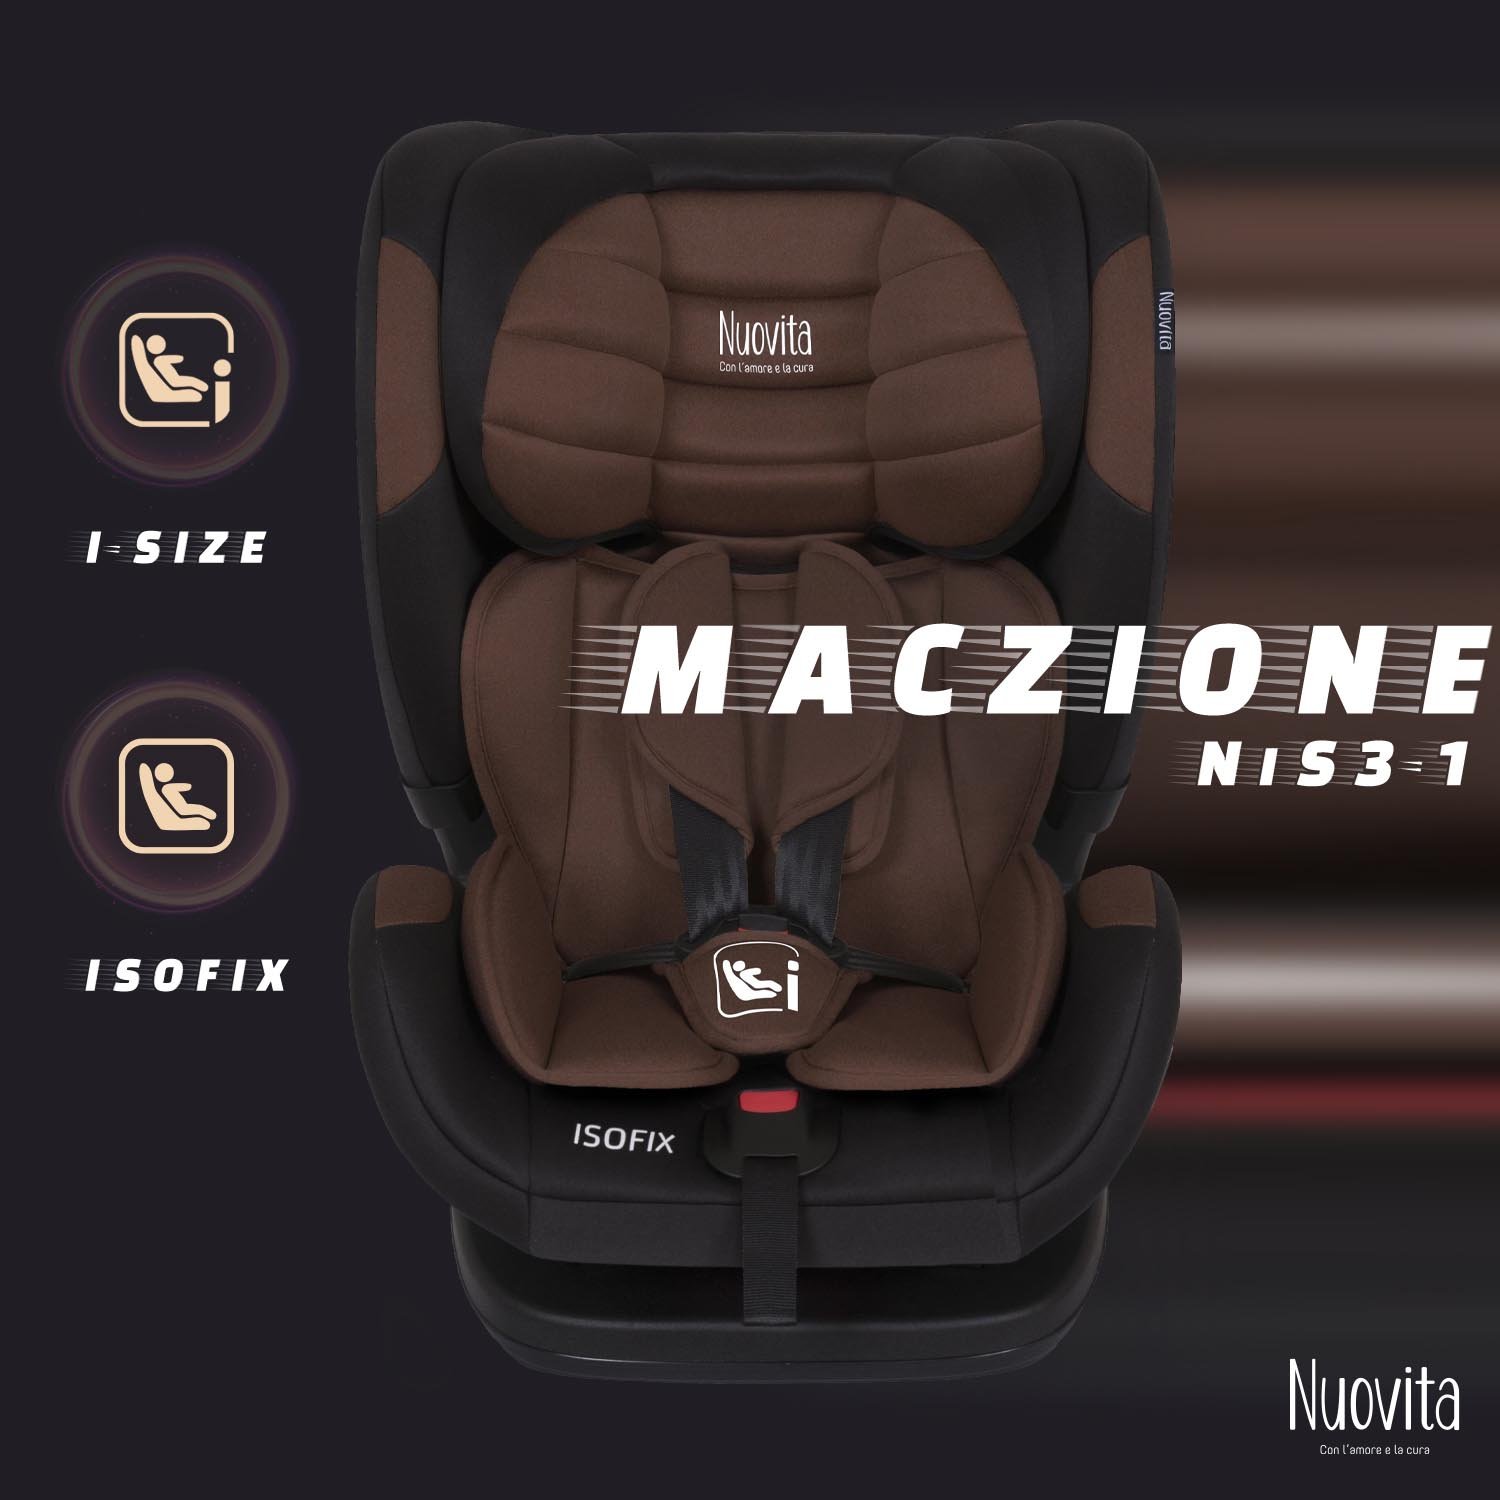 Детское автокресло Nuovita Maczione NiS3-1, Isofix, группа 1,2,3, 9-36 кг (Шоколад)